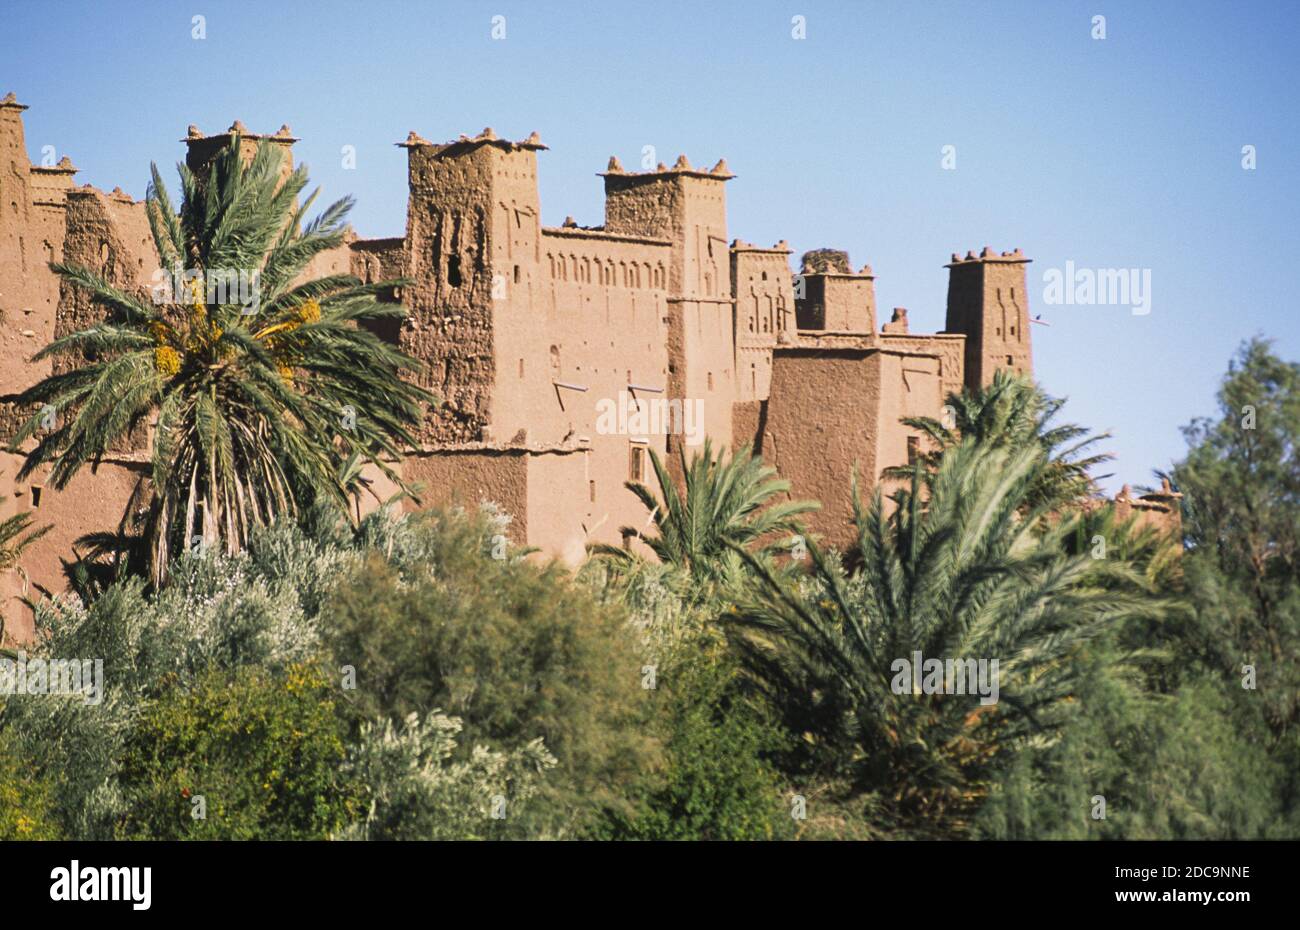 10.11.2010, Ouarzazate, Maroc, Afrique - vue sur l'ancienne architecture en argile et les bâtiments en brique de boue de la forteresse historique Ksar d'ait Benhaddou. Banque D'Images